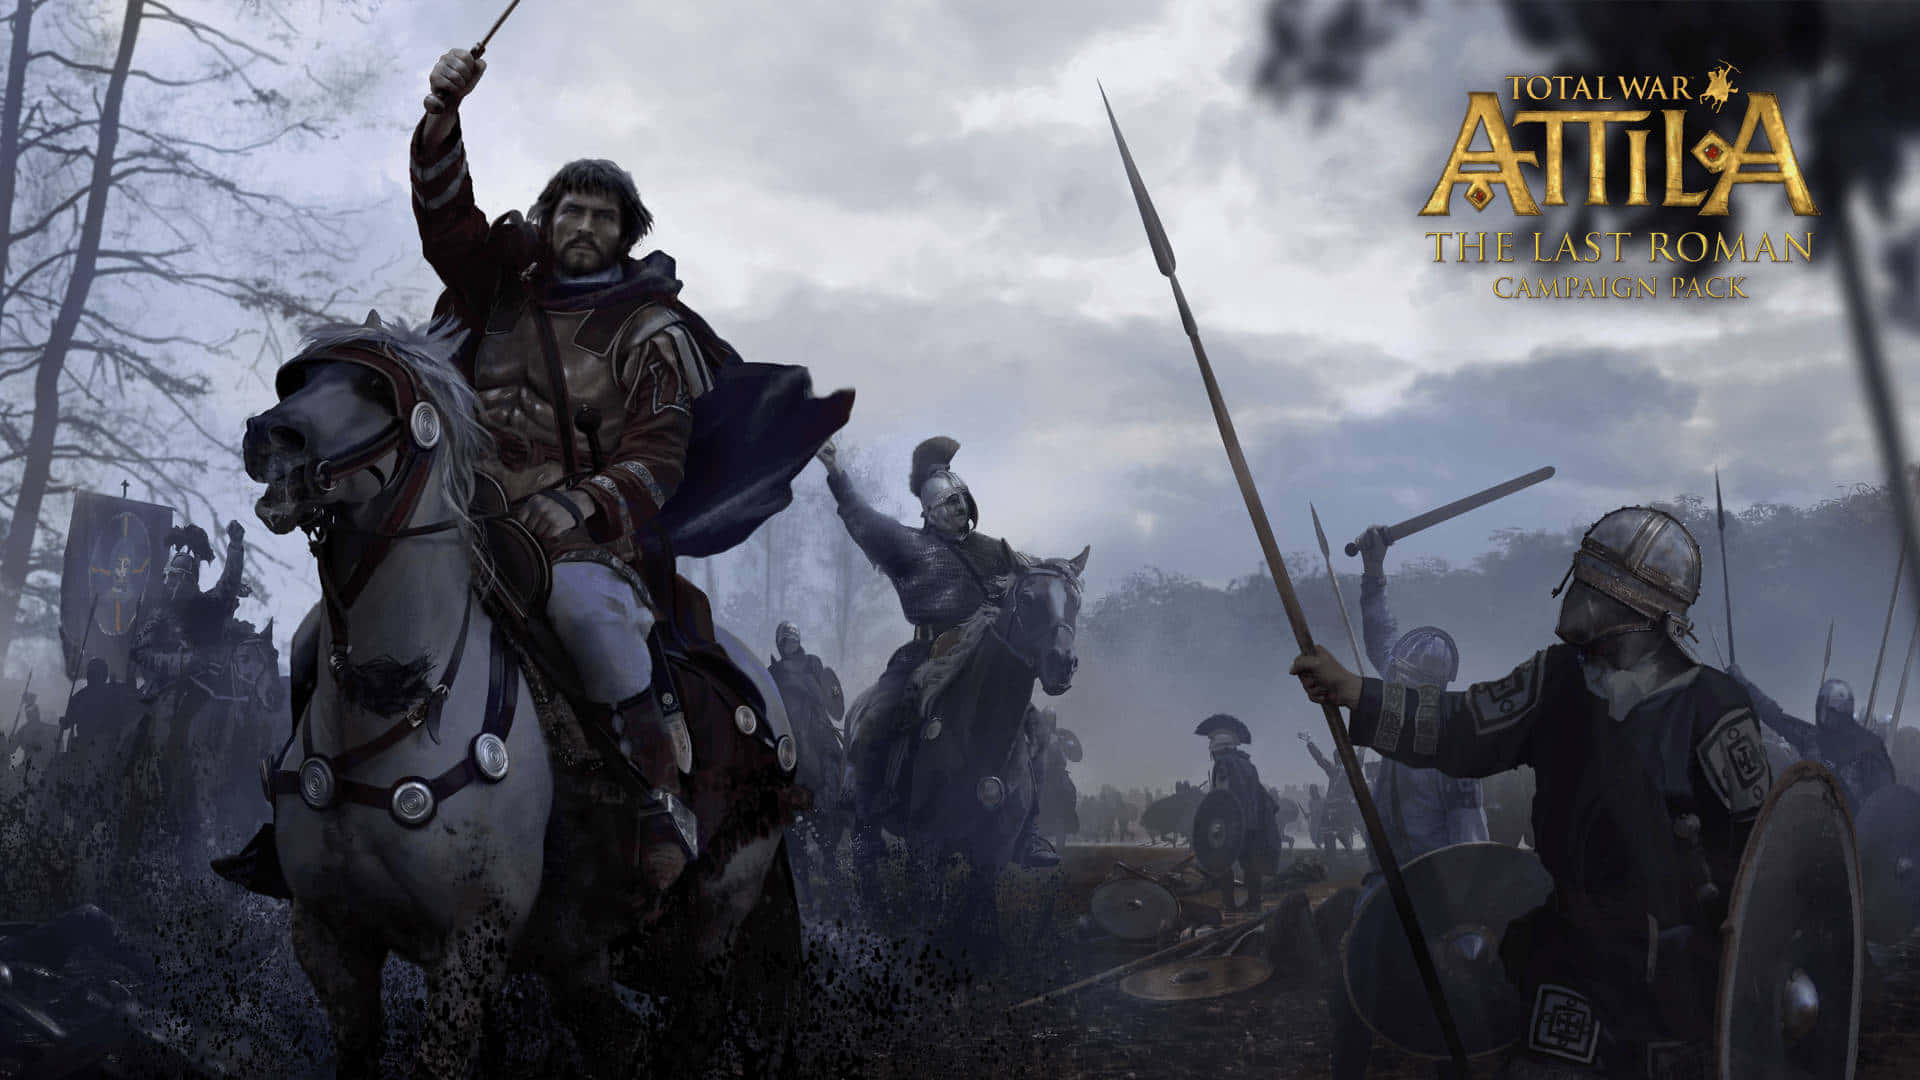 Atrevase A Conquistar O Antigo Império Romano - Total War: Attila.